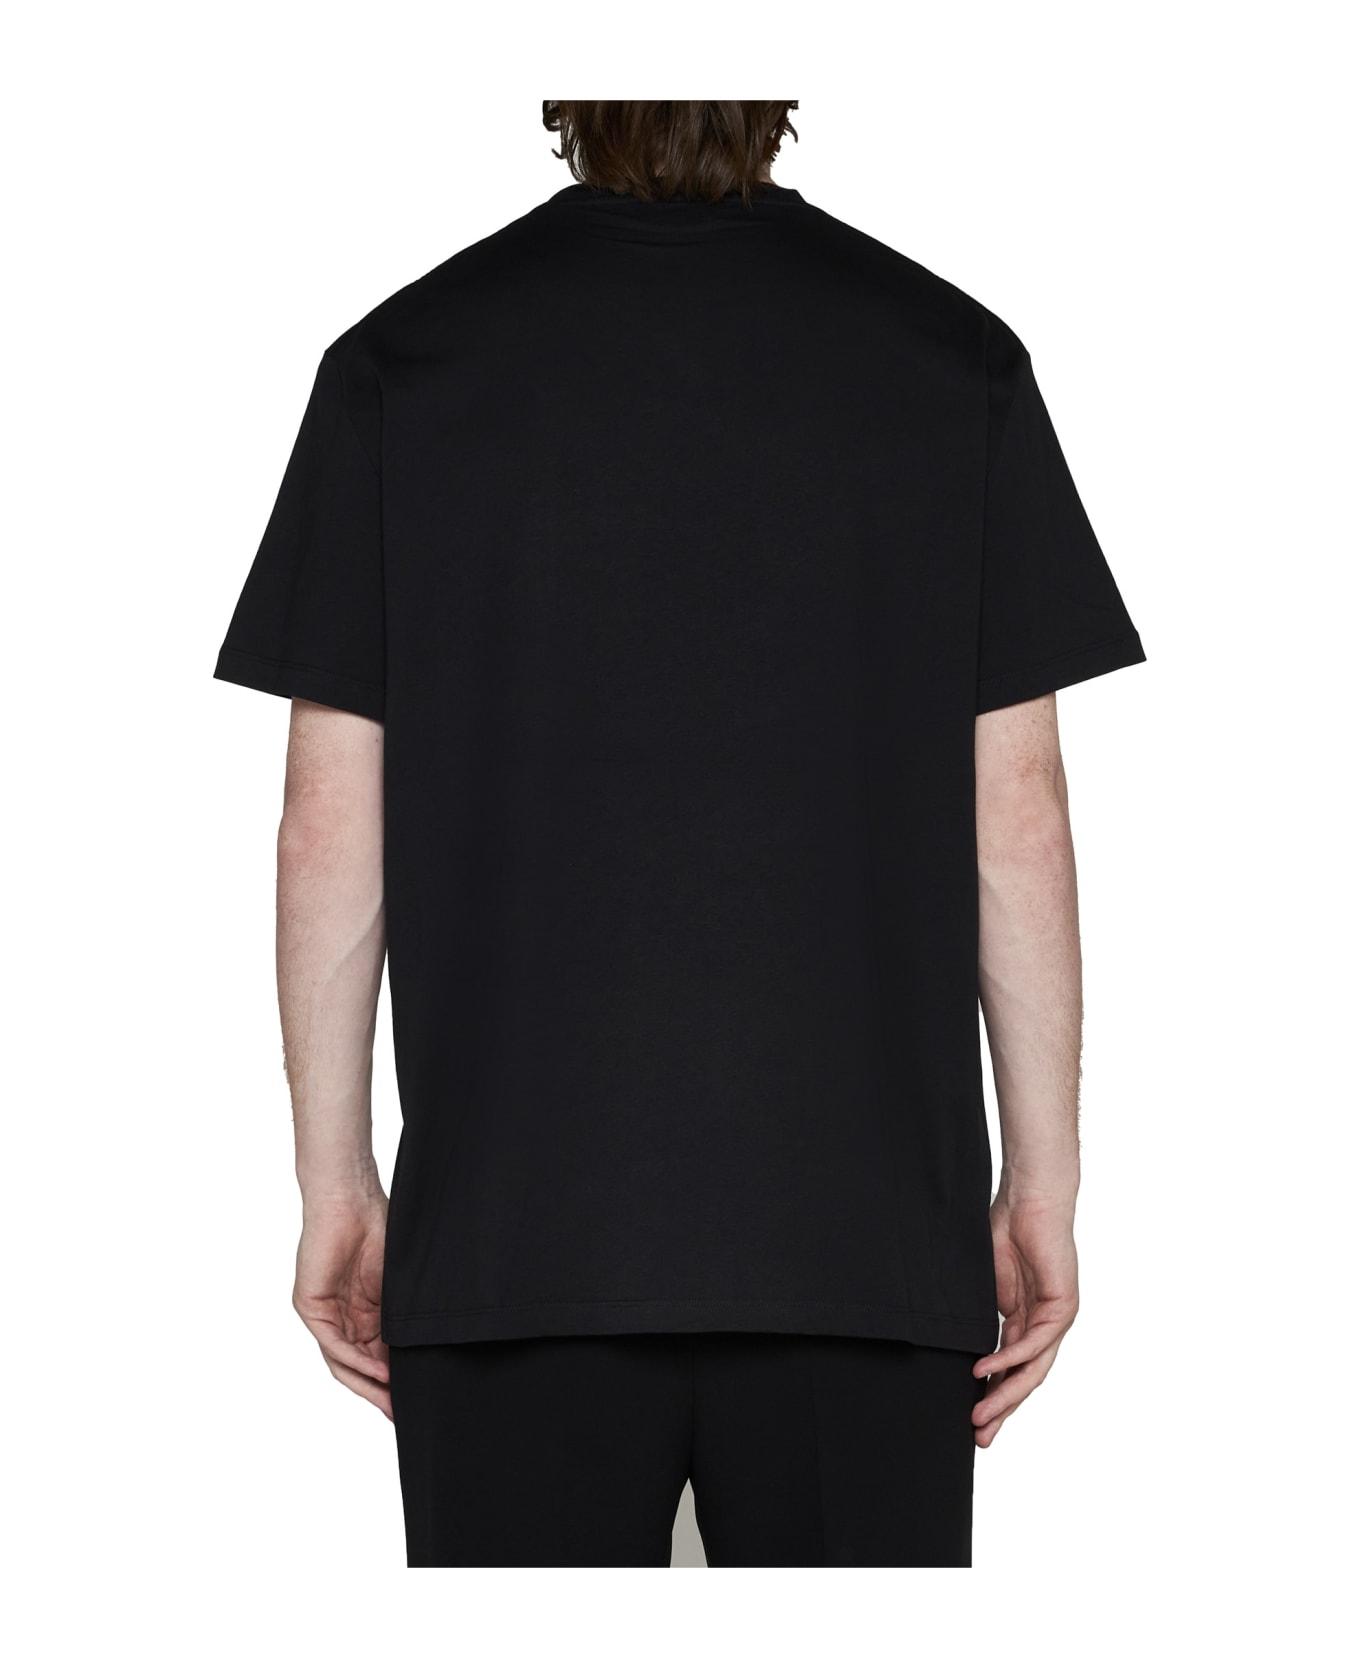 Alexander McQueen Logo Tape T-shirt - Black mix